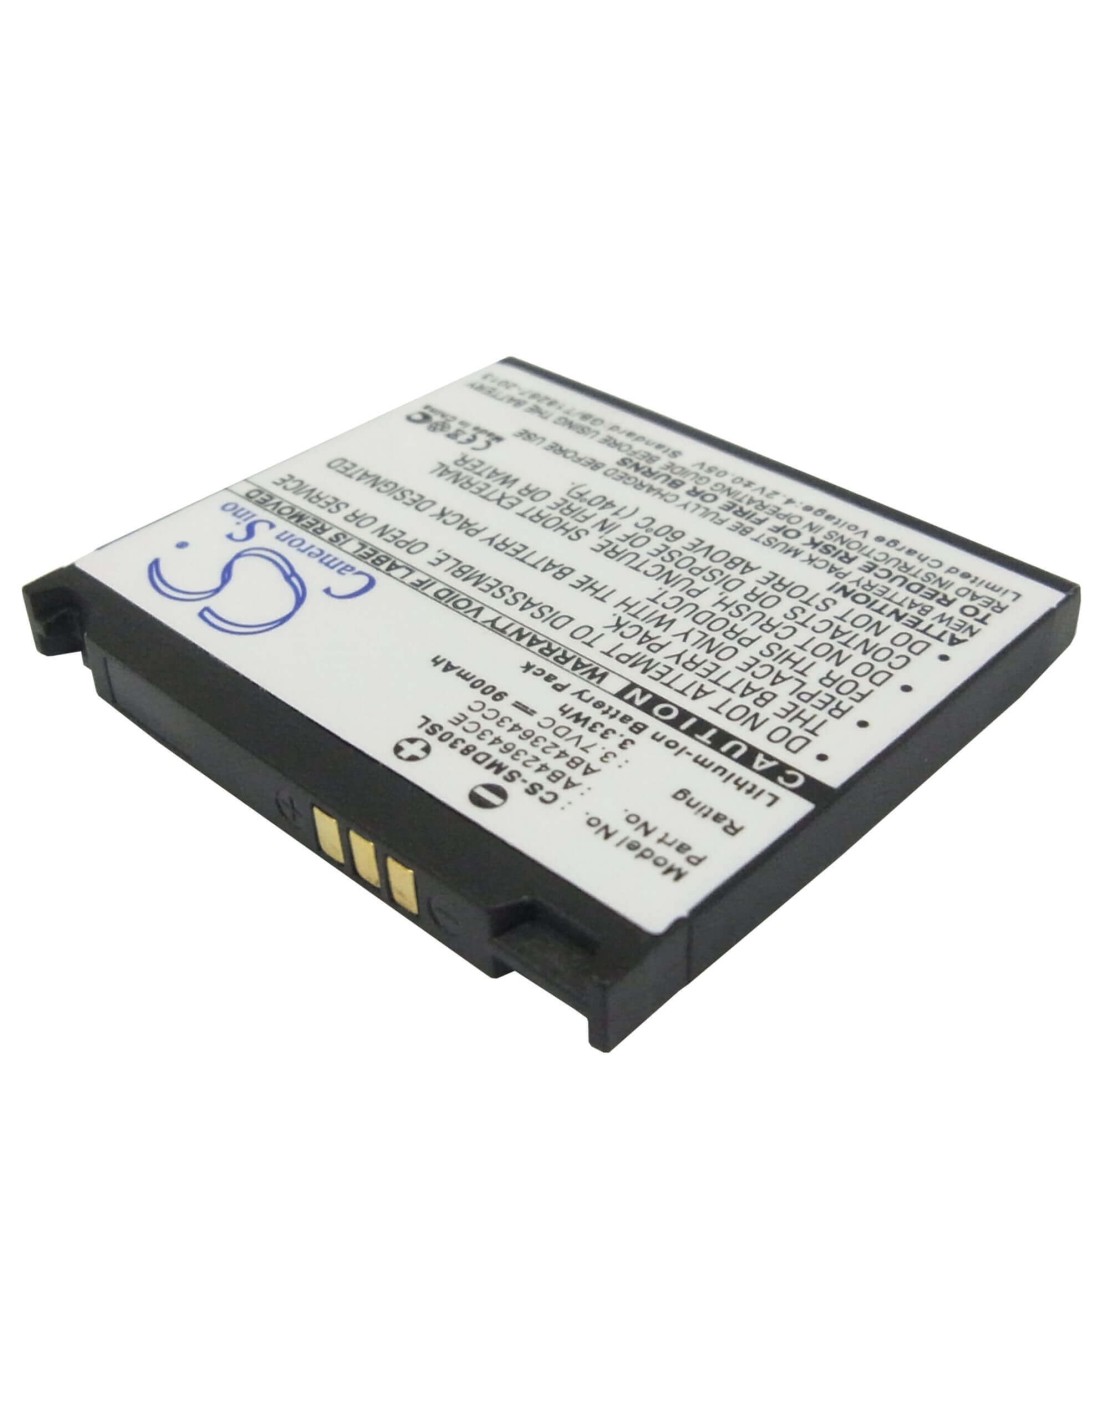 Battery for Samsung SGH-D830, SGH-D838, SGH-X820 3.7V, 900mAh - 3.33Wh